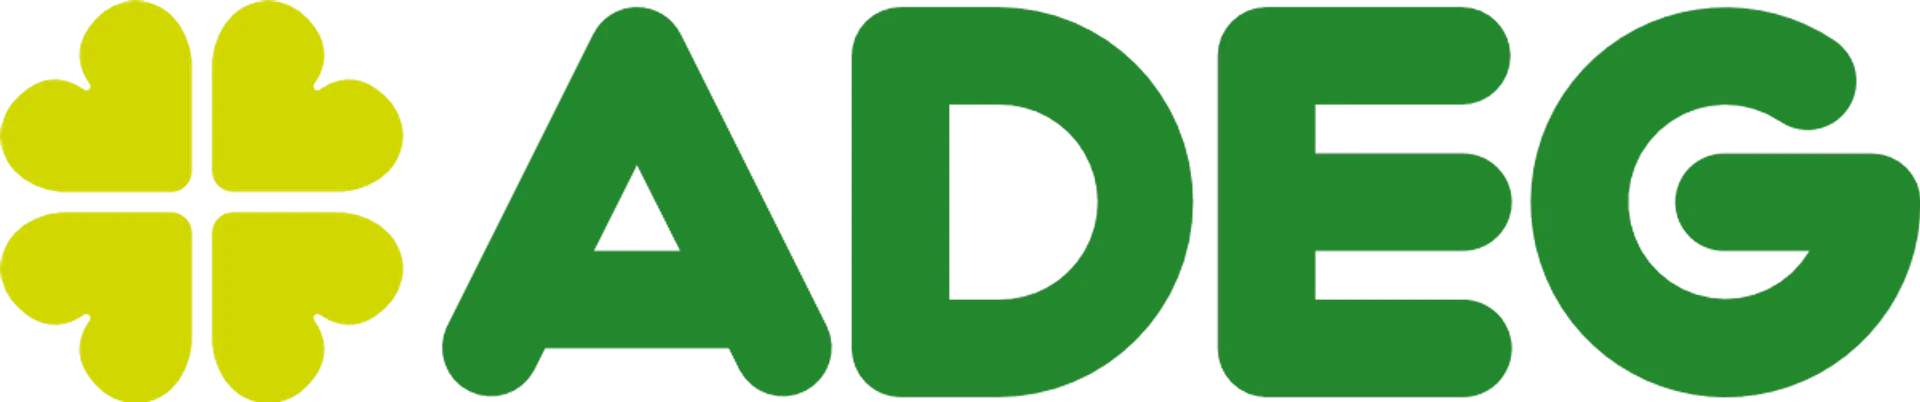 ADEG logo